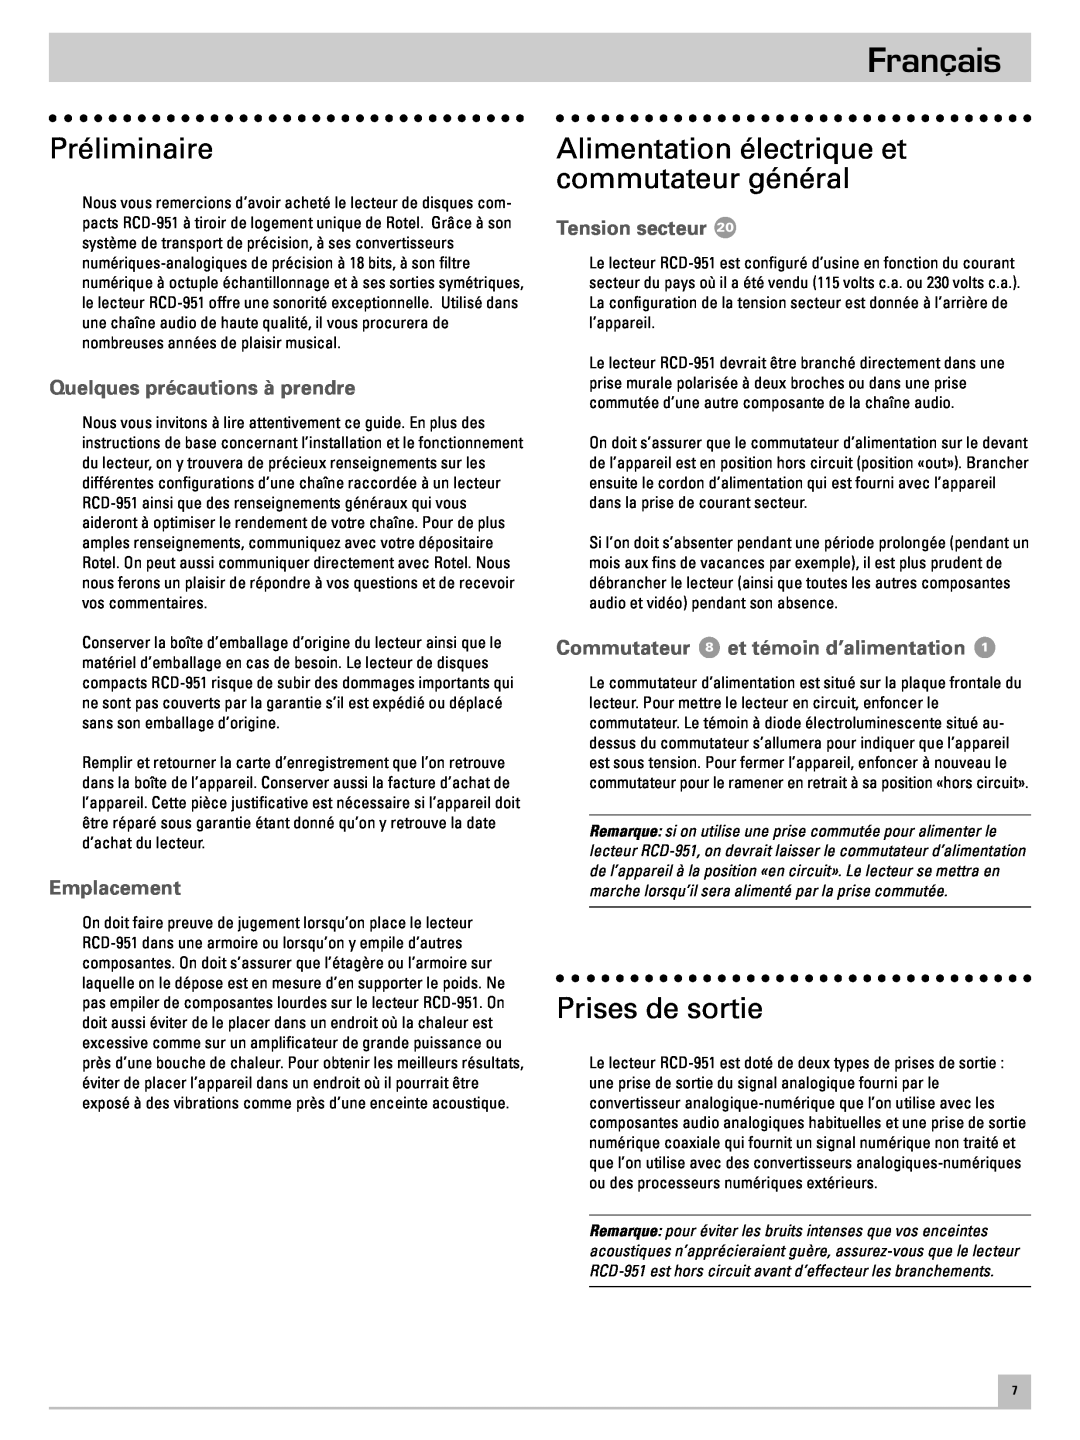 Rotel RCD-951 Français, Préliminaire, Alimentation électrique et commutateur général, Prises de sortie, Emplacement 